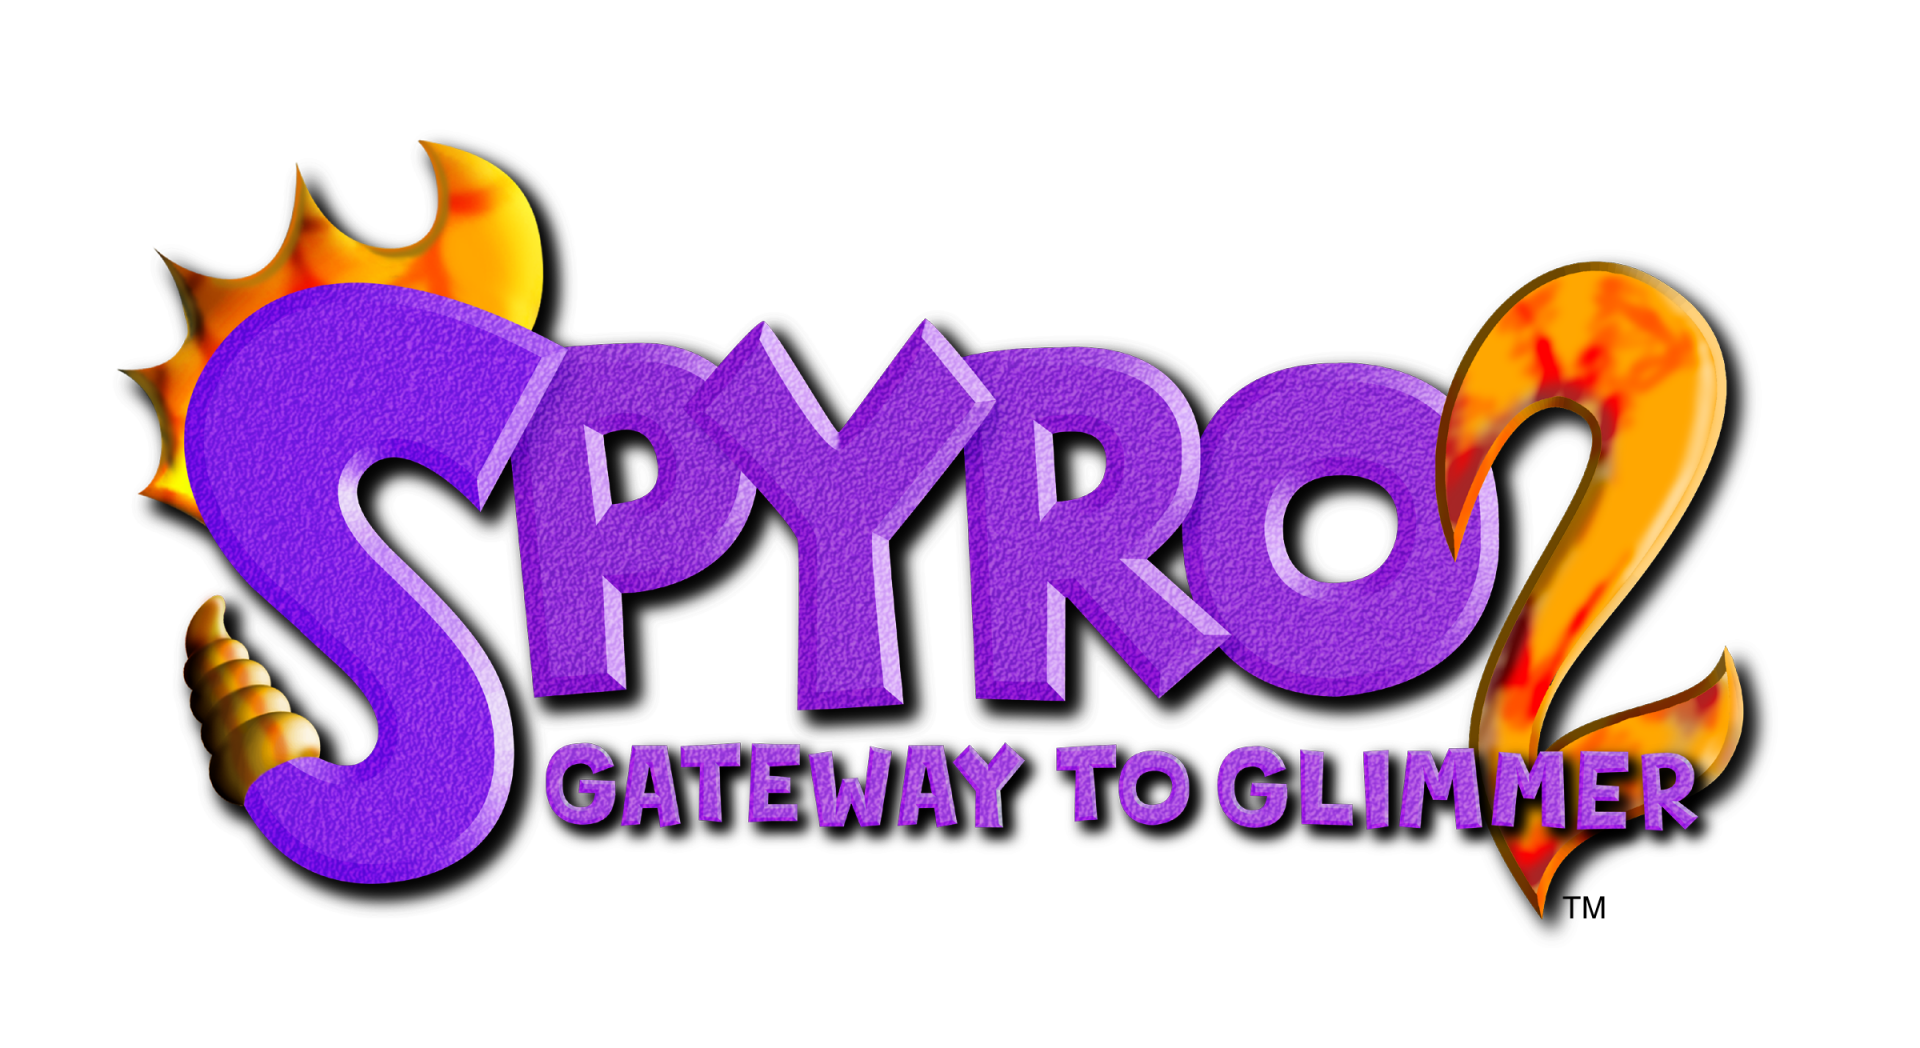 Spyro 2